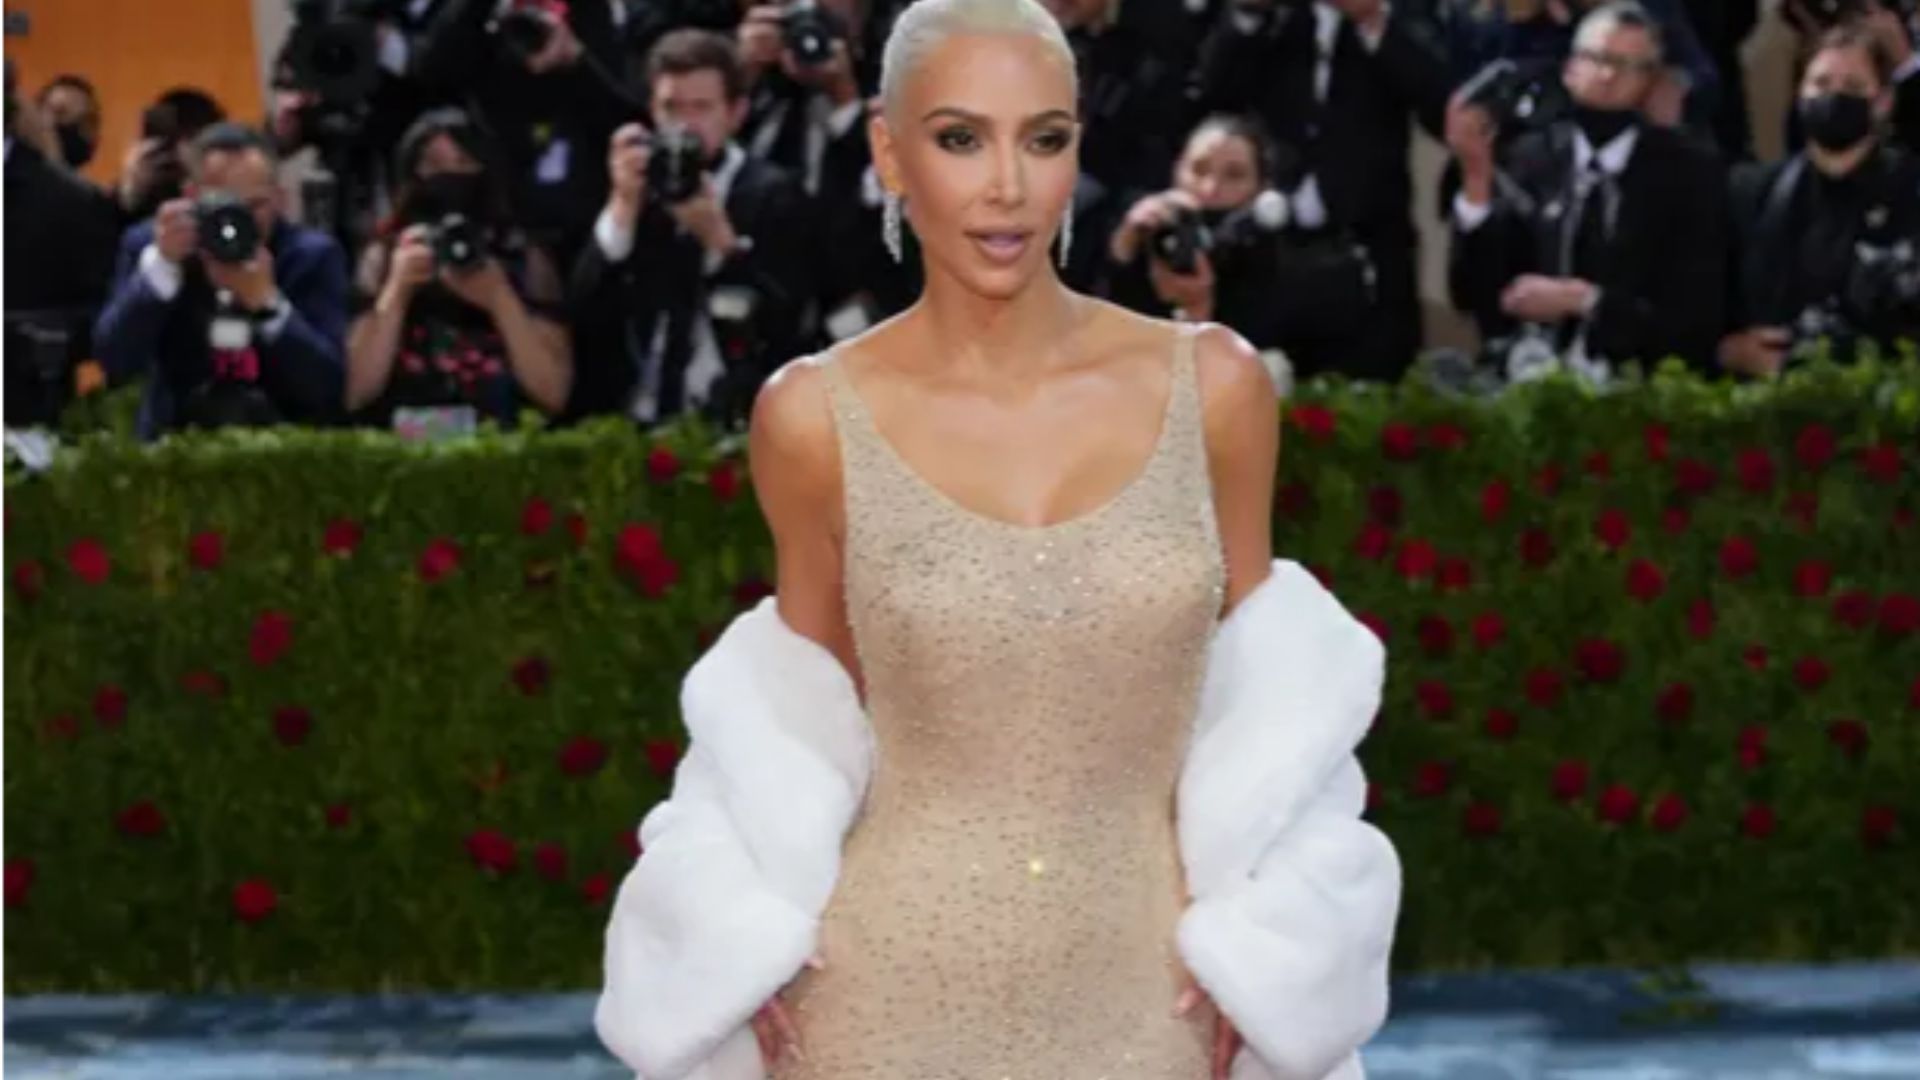 Kim Kardashian blamed for causing 'permanent harm' to Monroe's dress